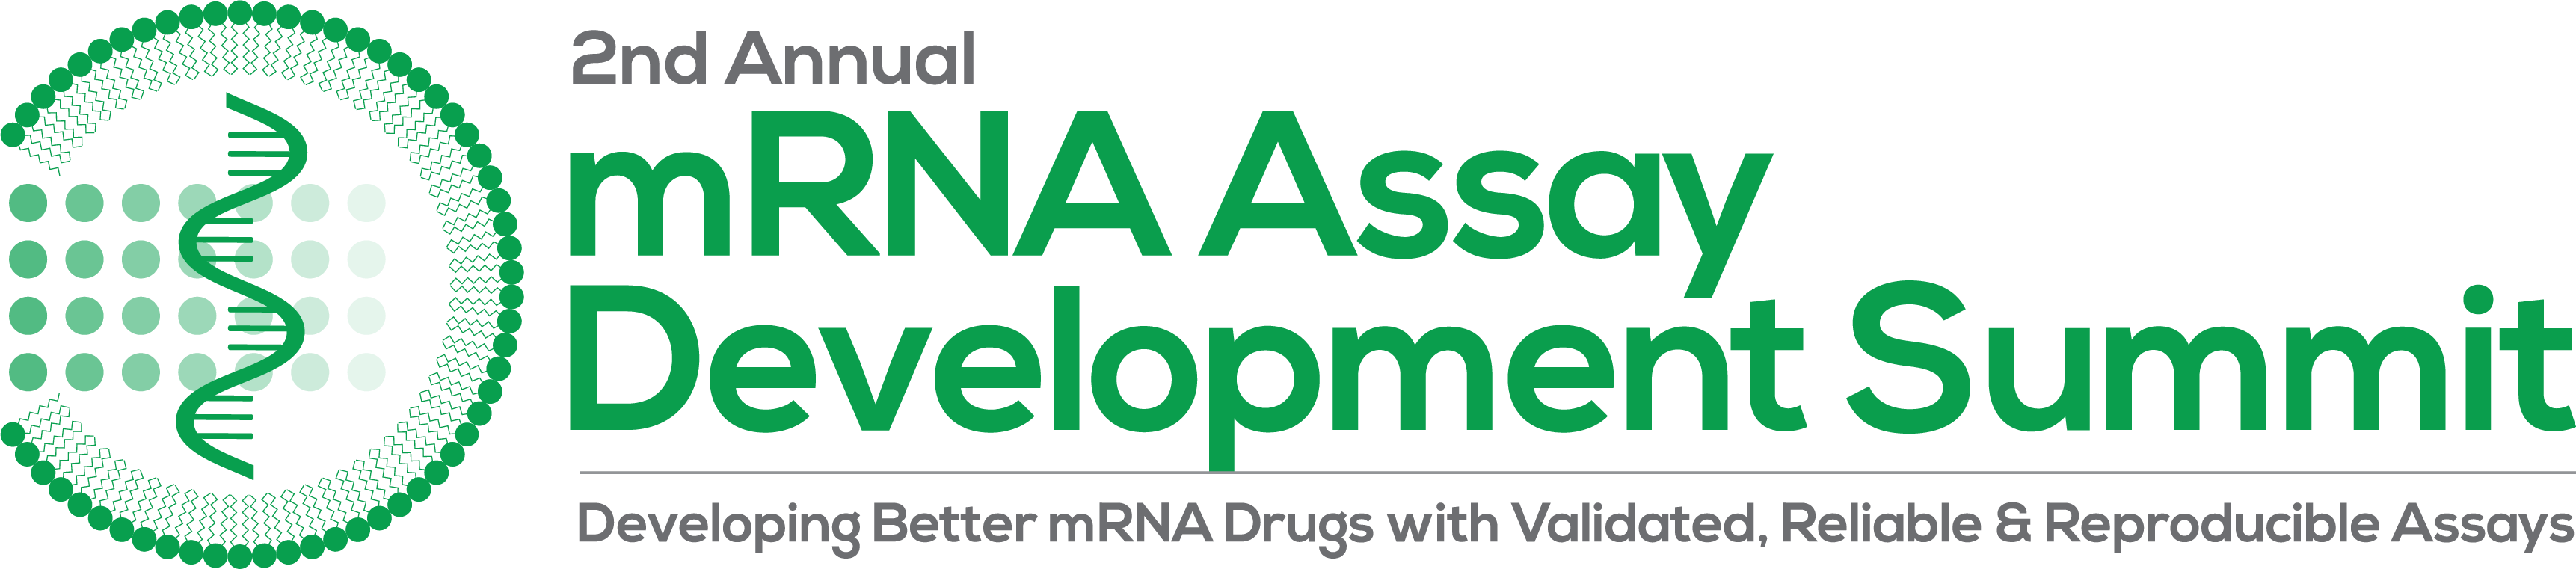 2nd Annual mRNA Assay Development Summit STRAPLINE